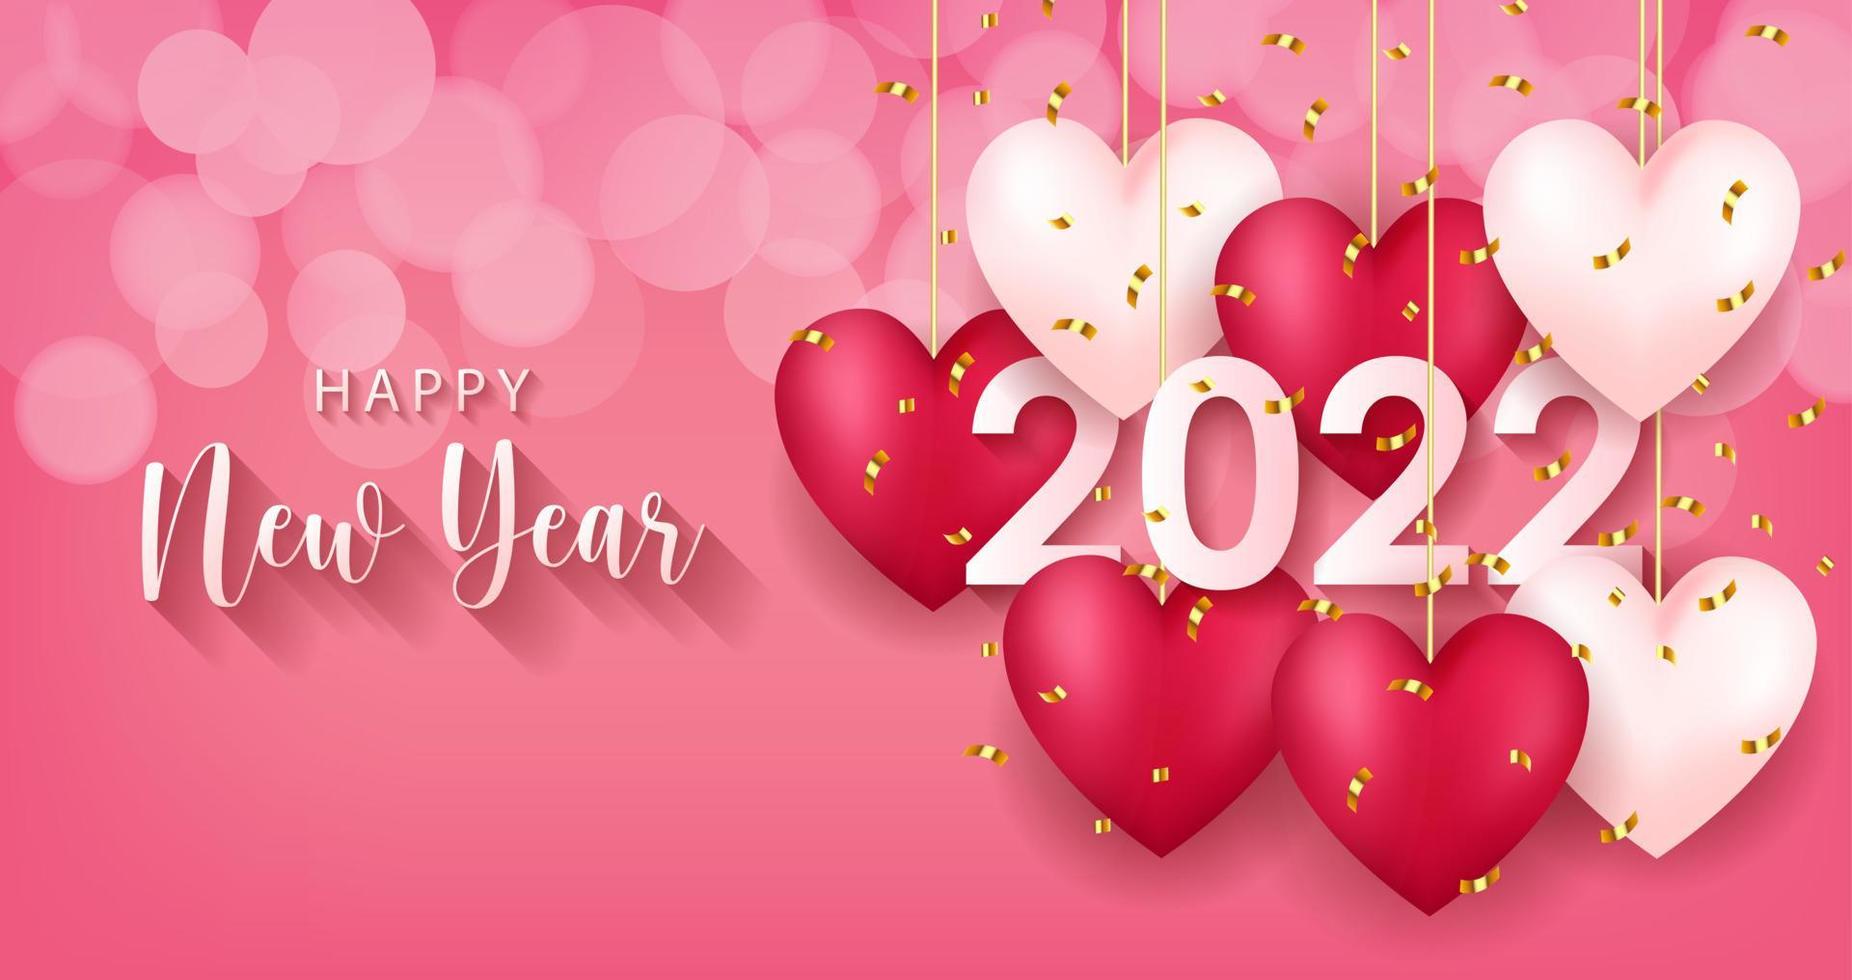 2022 Frohes neues Jahr Grußkarte mit realistischem Hintergrunddesign im Liebesherz-Stil für Grußkarten, Poster, Banner. Vektor-Illustration. vektor